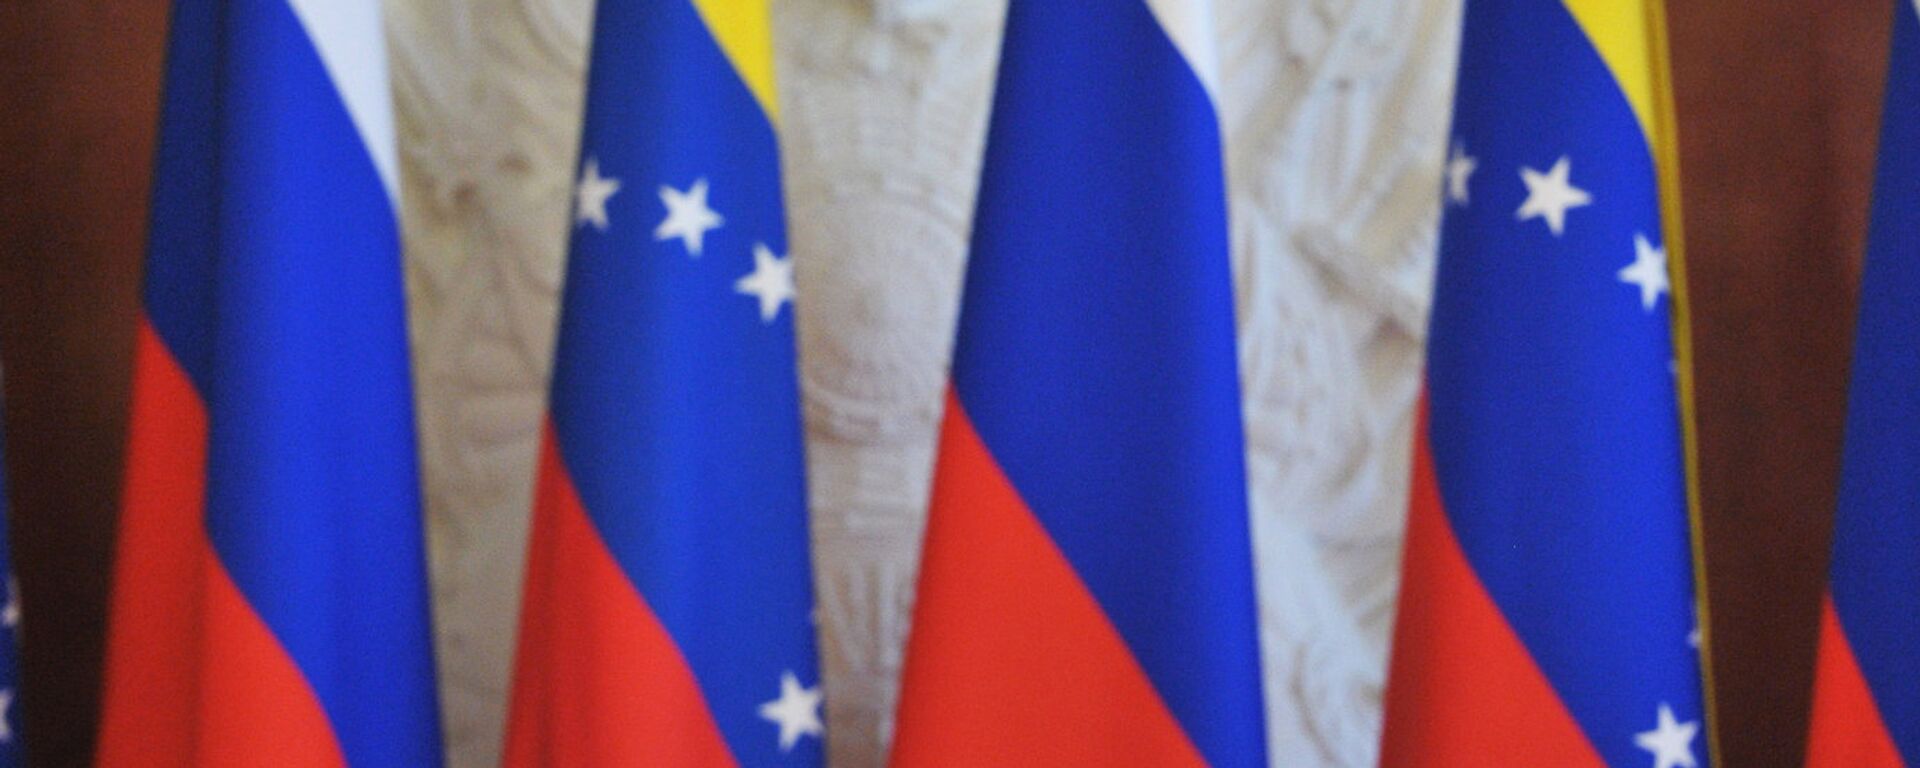 Las banderas de Rusia y Venezuela - Sputnik Mundo, 1920, 08.06.2022